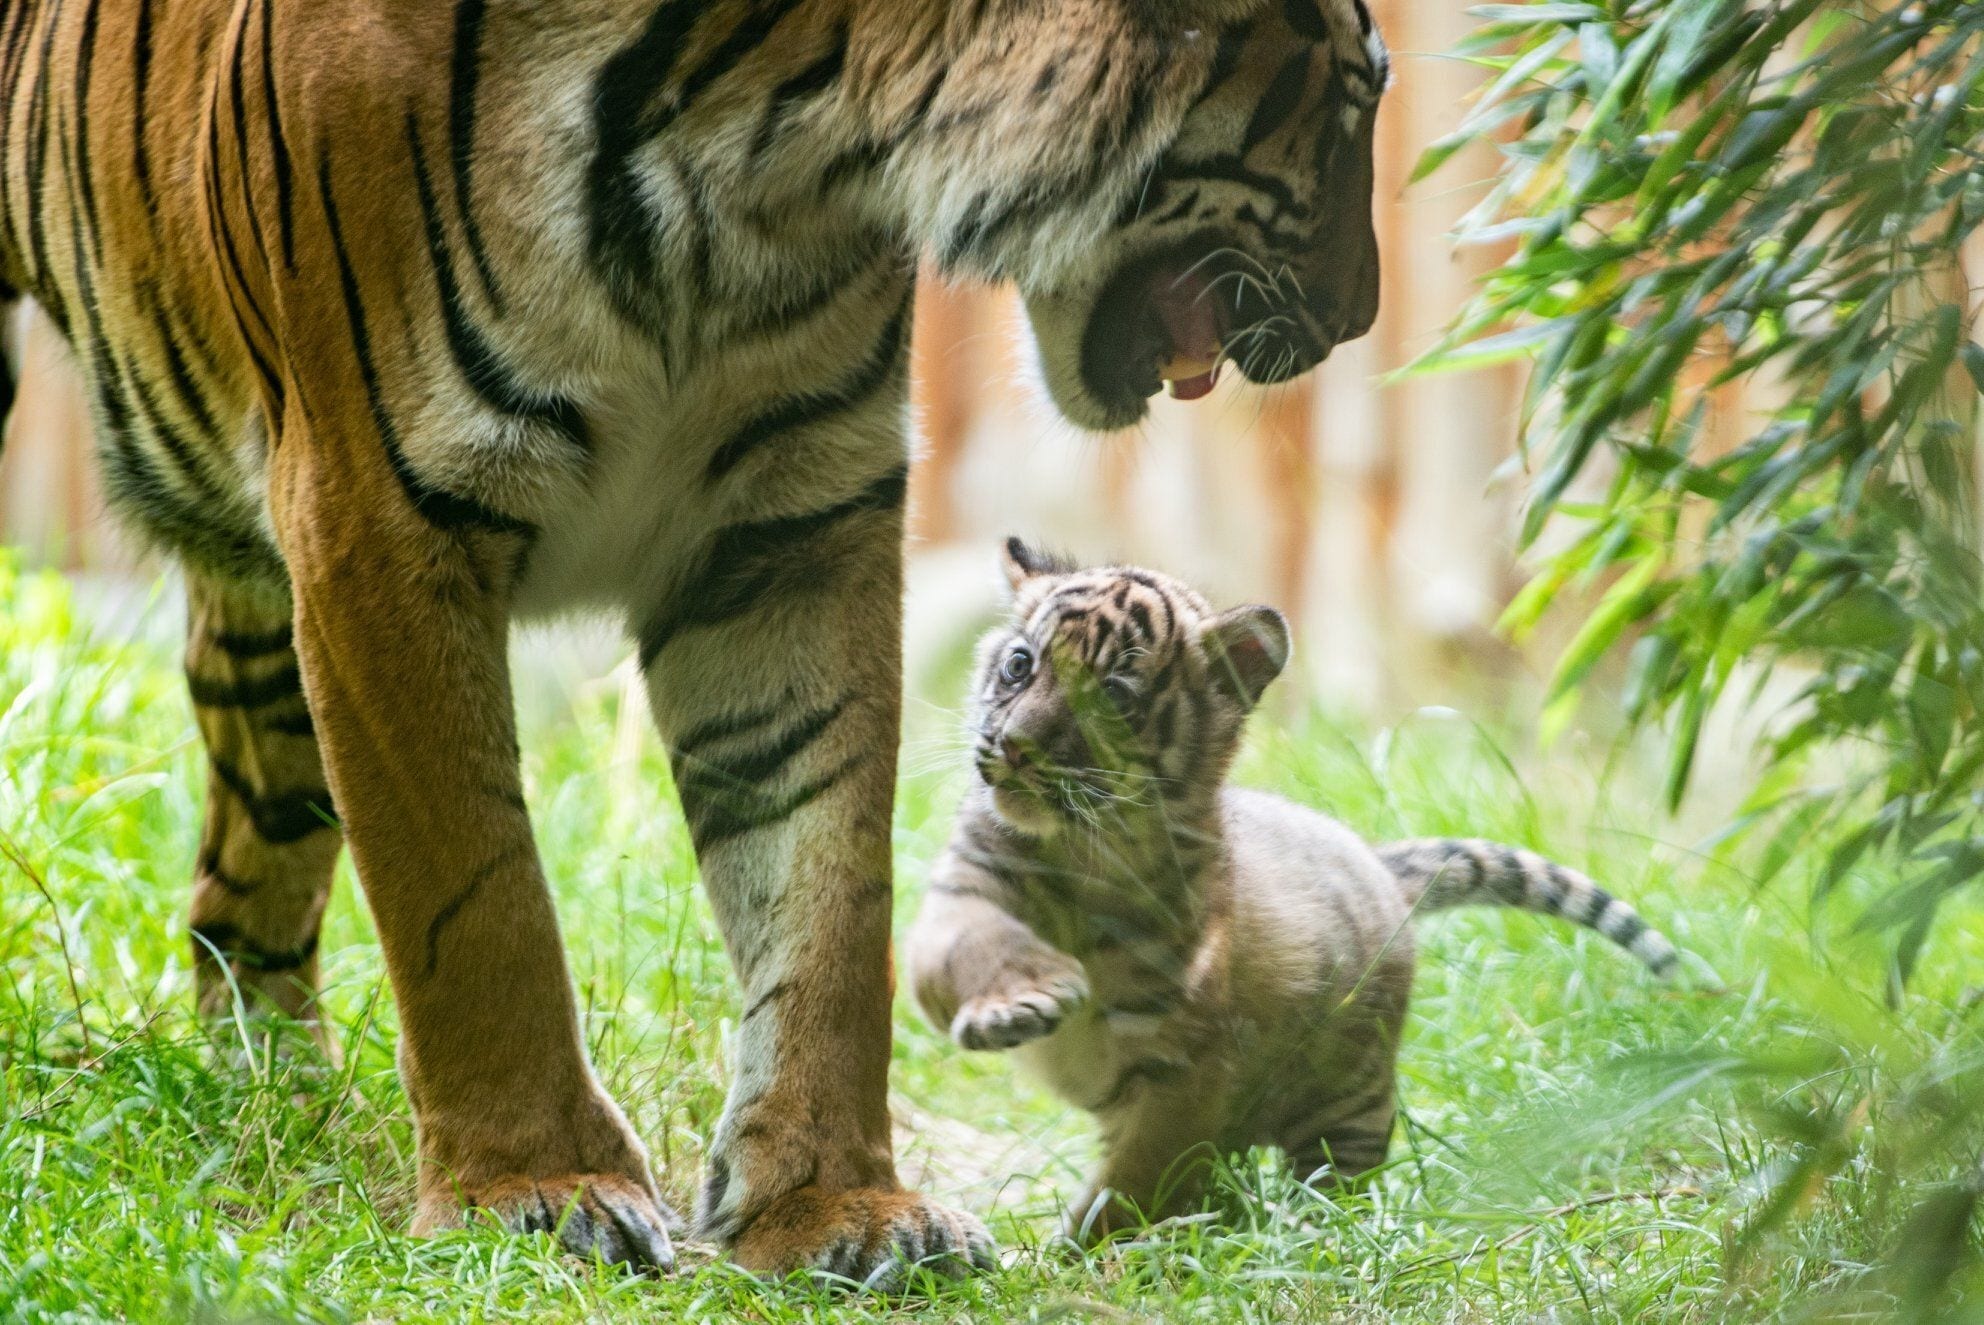 Ce jeune tigre de Sumatra est né au zoo de Wroclaw, en Pologne, durant la période de